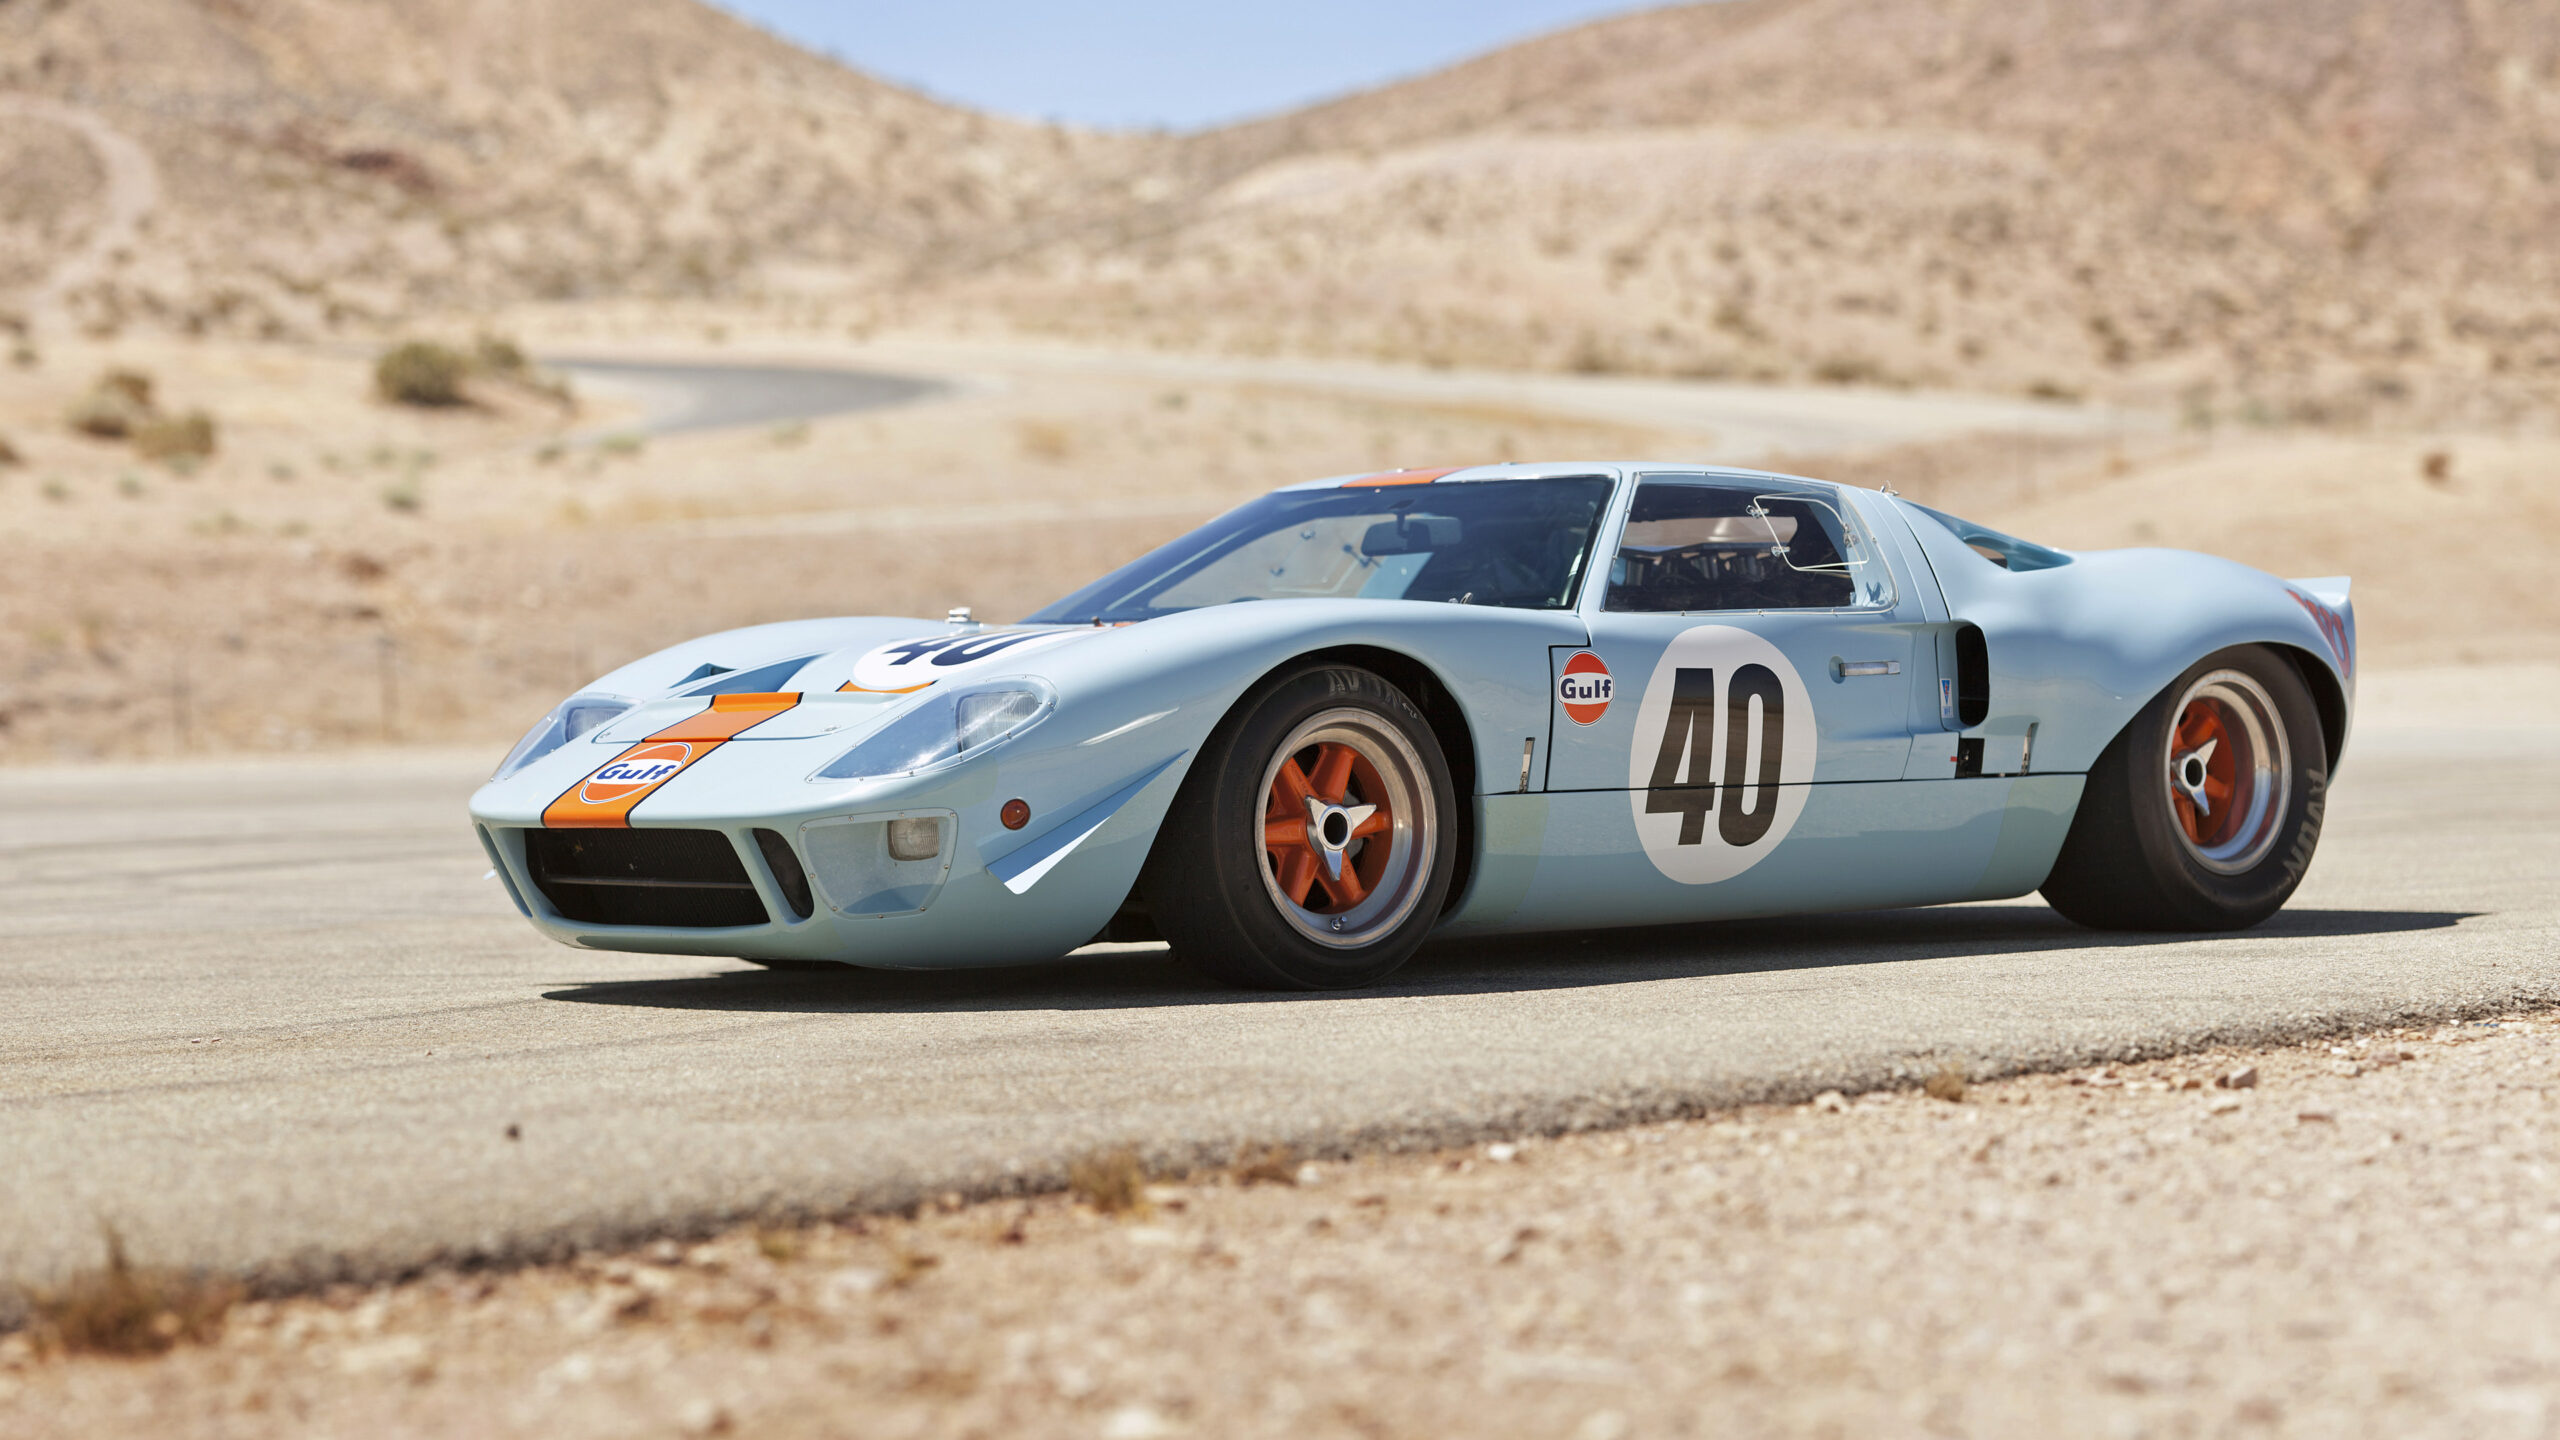 1968 Ford GT40, Le Mans achievements, Racing nostalgia, Legendary car, 2560x1440 HD Desktop